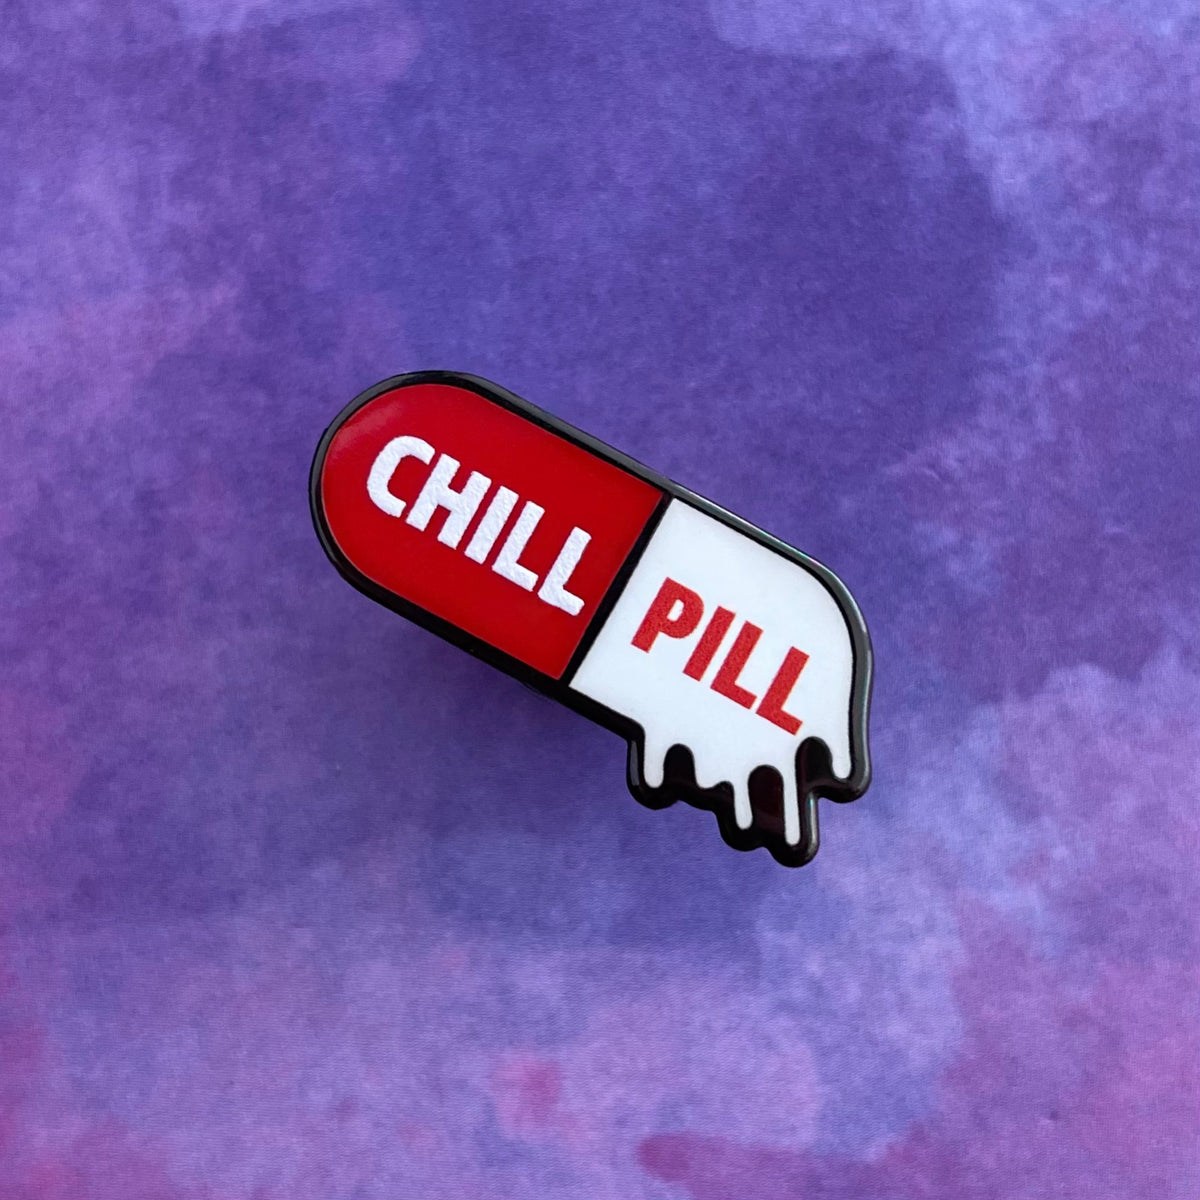 Not So Chill Pill Pin